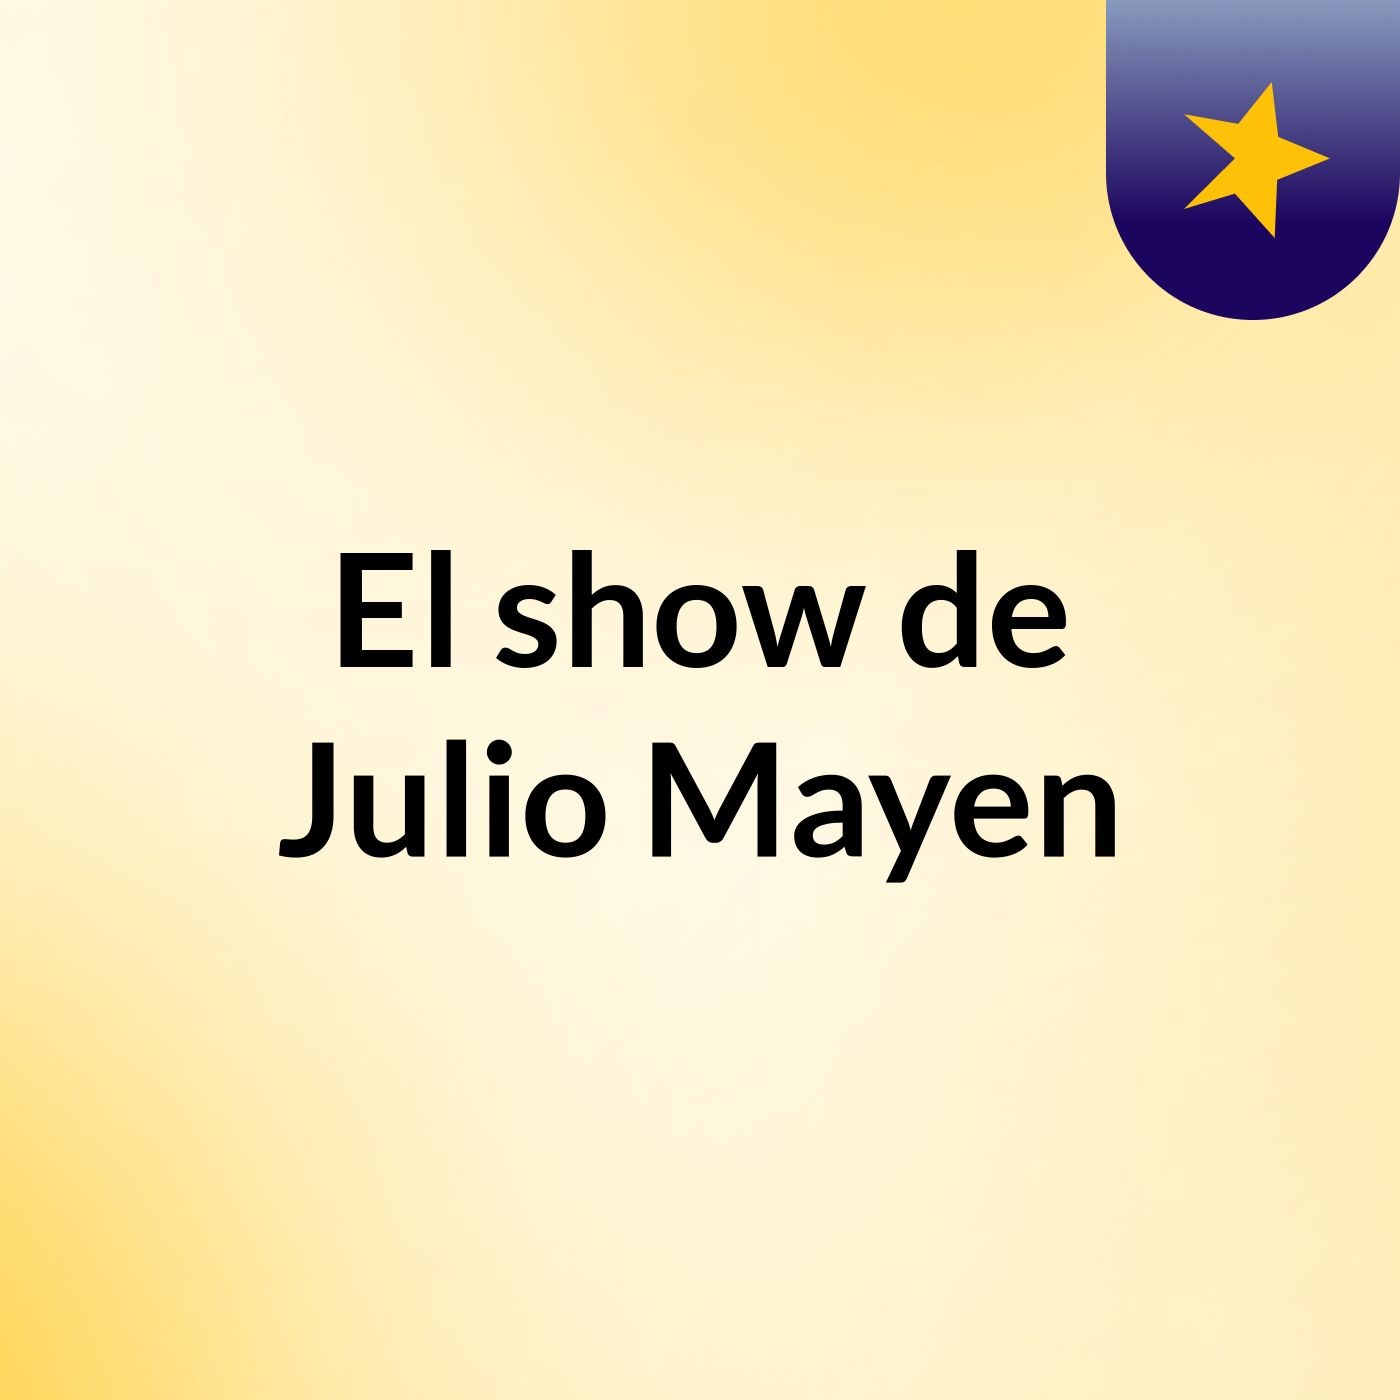 El show de Julio Mayen